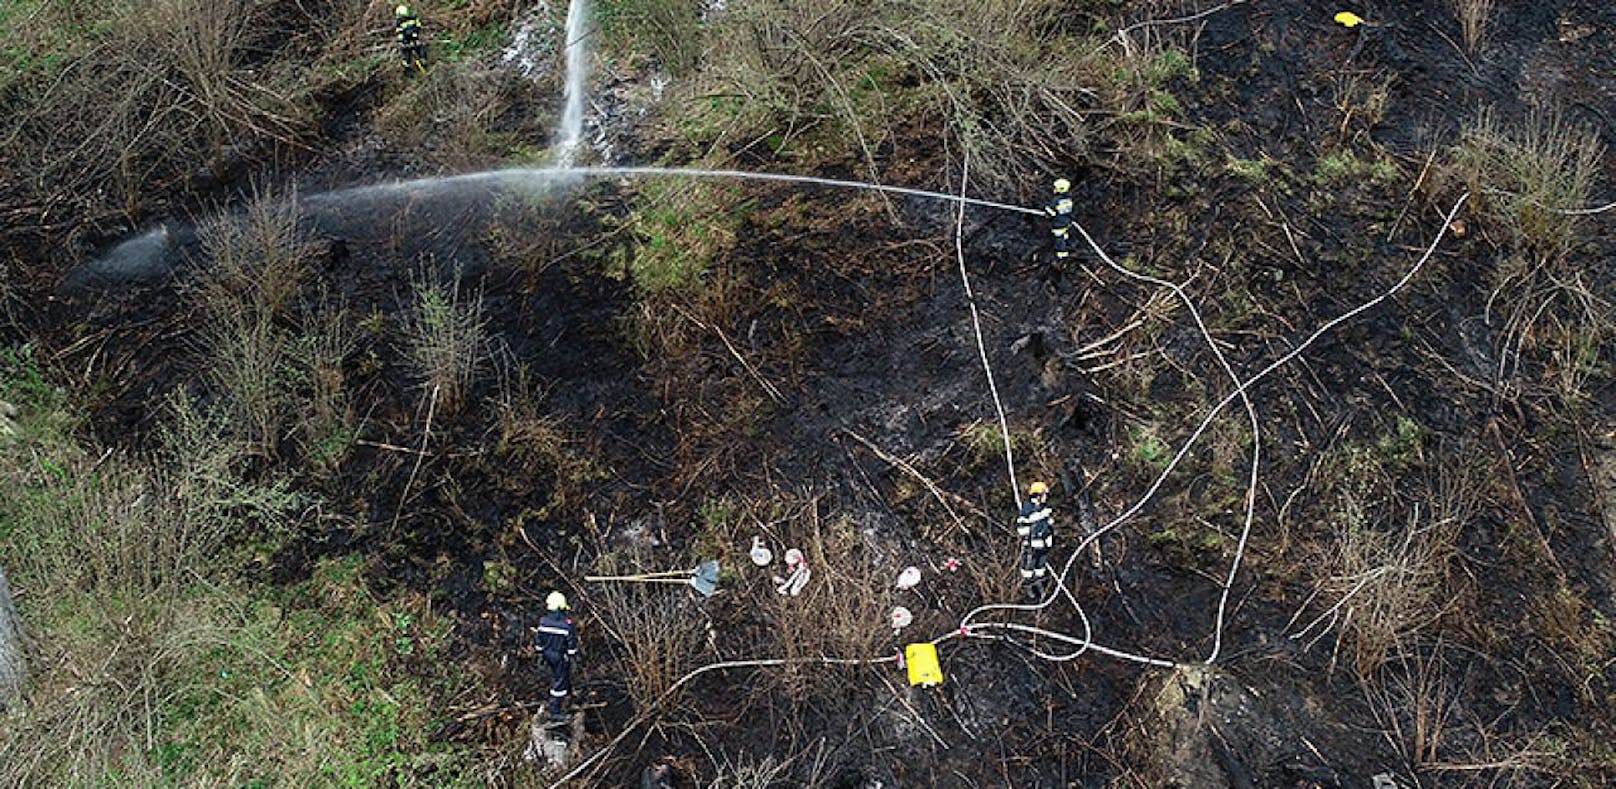 Das Bundesheer löste mit einer Signalpatrone einen Waldbrand aus, bei dem fünf Feuerwehren benötigt wurden, um ihn zu löschen.